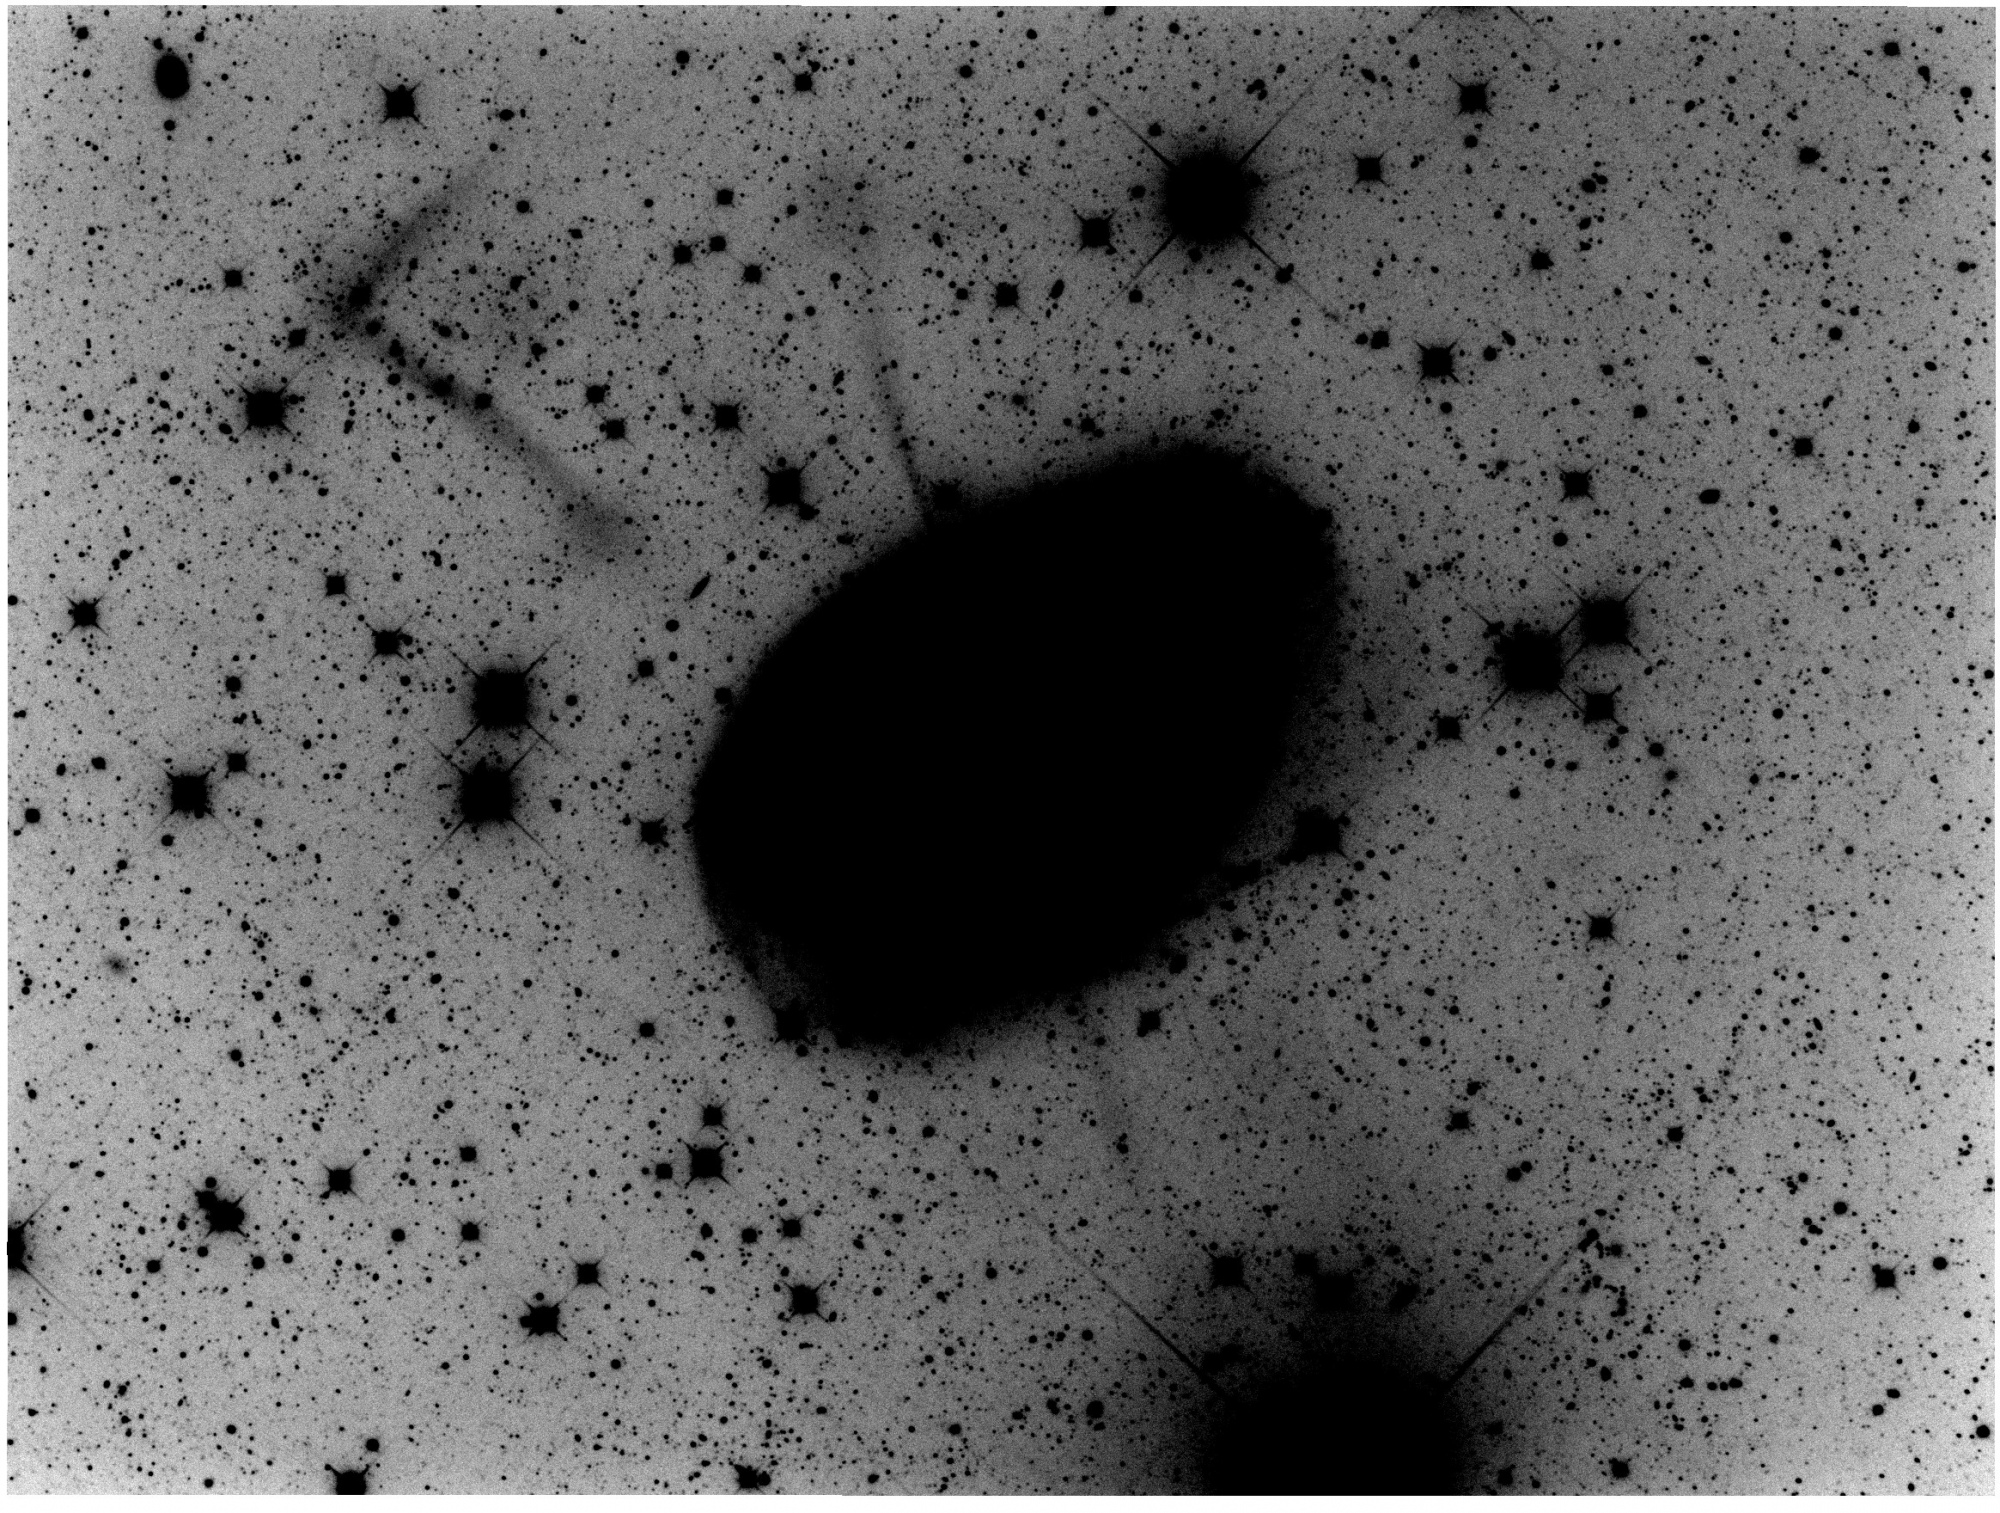 Decal_NGC1097_L-Inverse-HautContrast.thumb.jpg.f44679bc09f01c5a935cc53185832f30.jpg